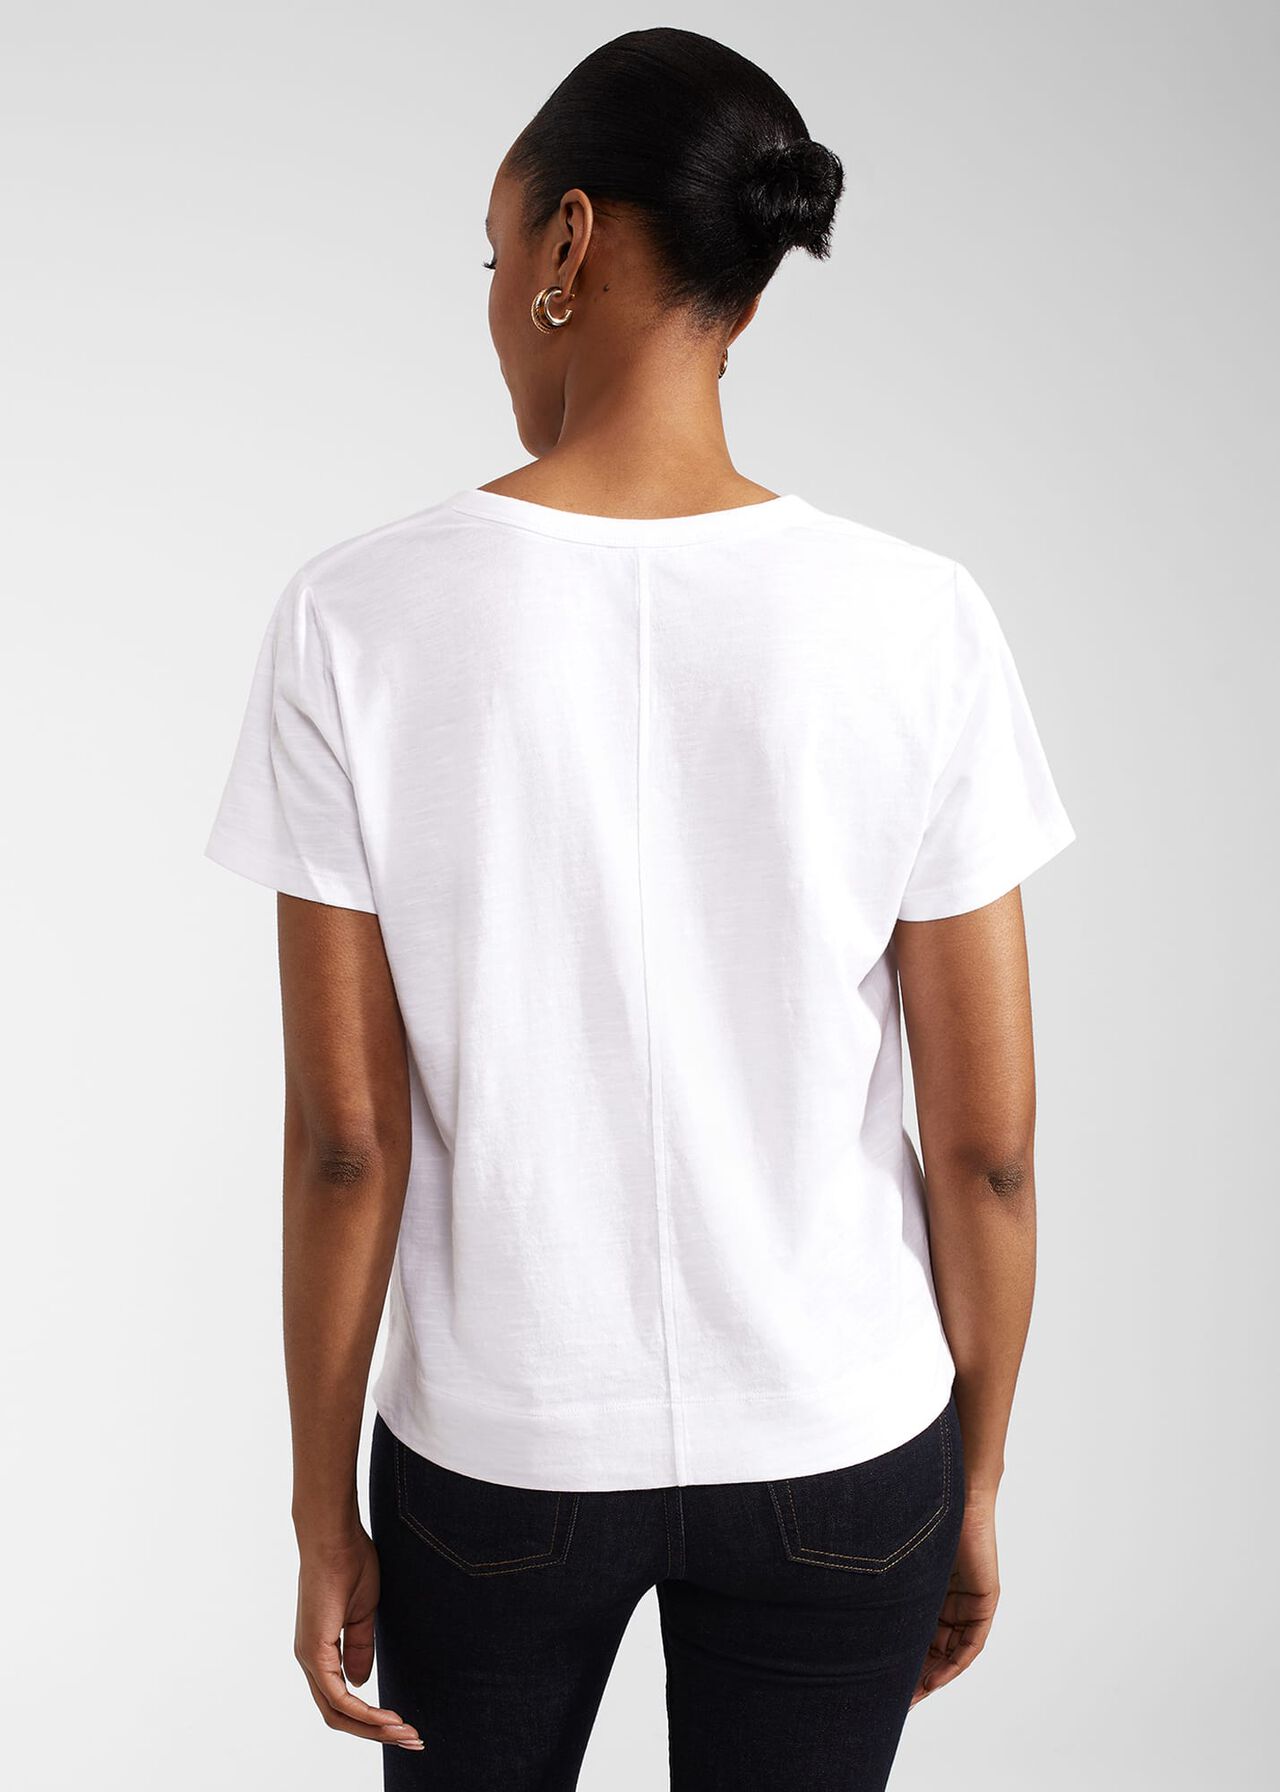 Arianna Cotton Slub T-Shirt, White, hi-res